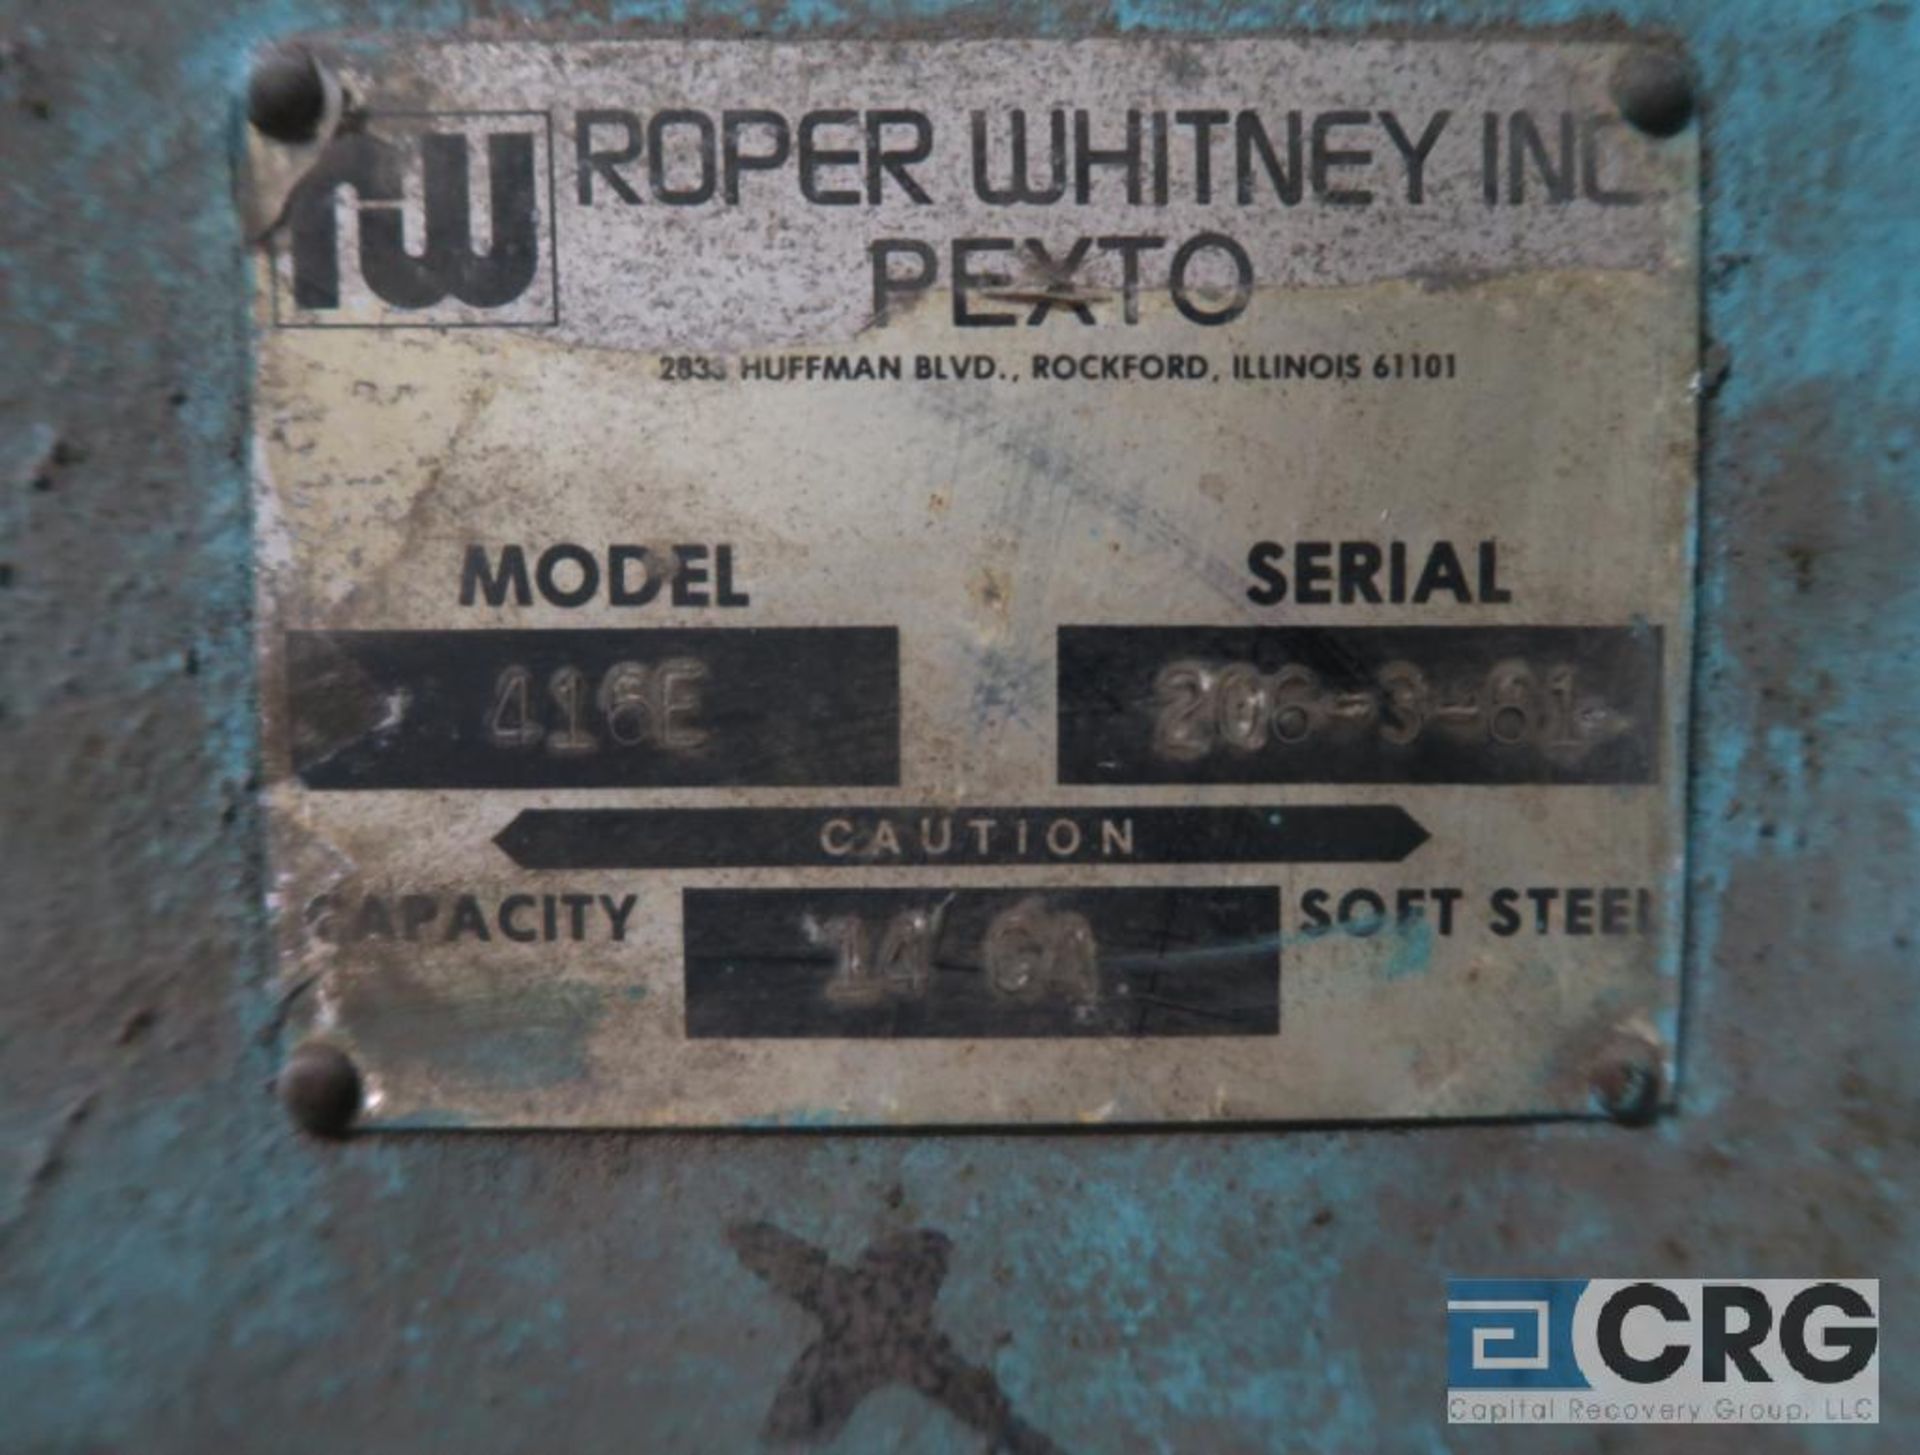 Pexto 416E pyramid bar, 3 bar, 14 ga soft steel cap, 36 in width, manual, s/n 206-3-81 (Boiler - Image 2 of 2